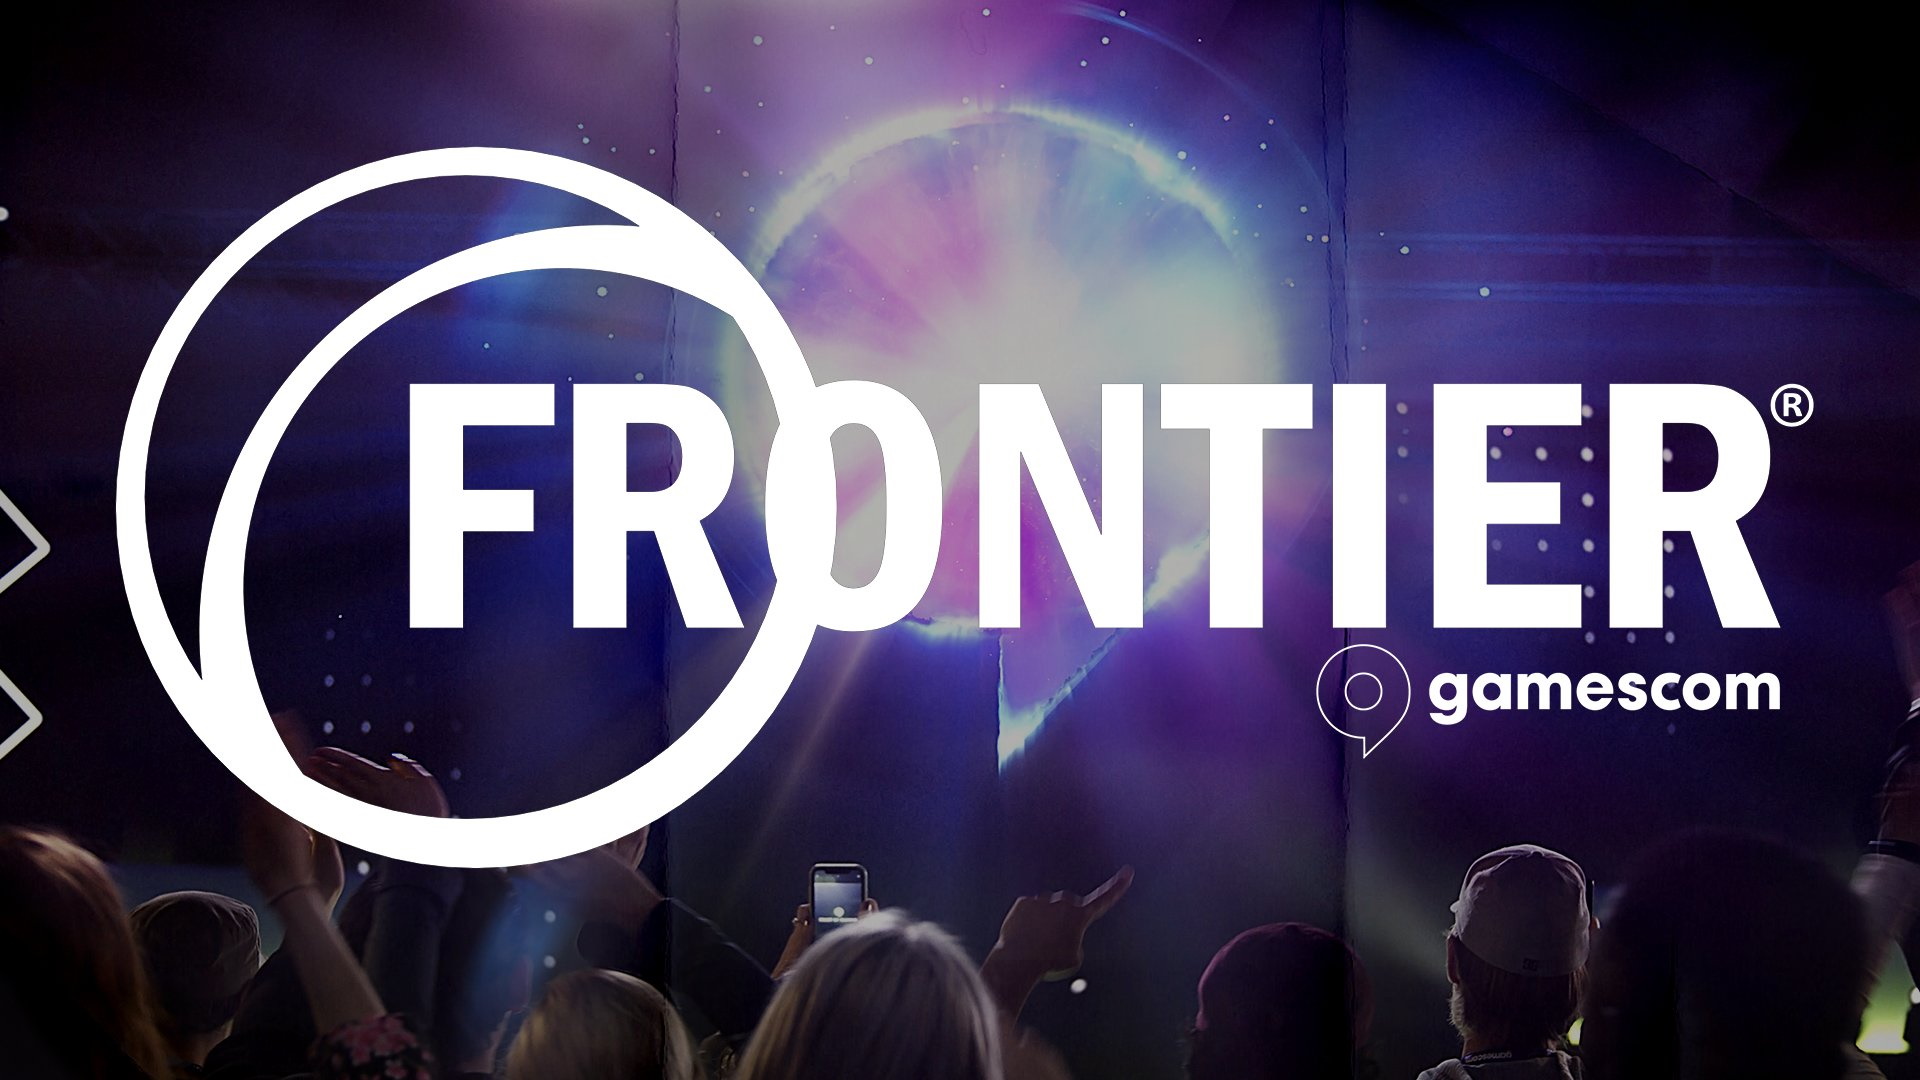 Frontier gamescom 2022